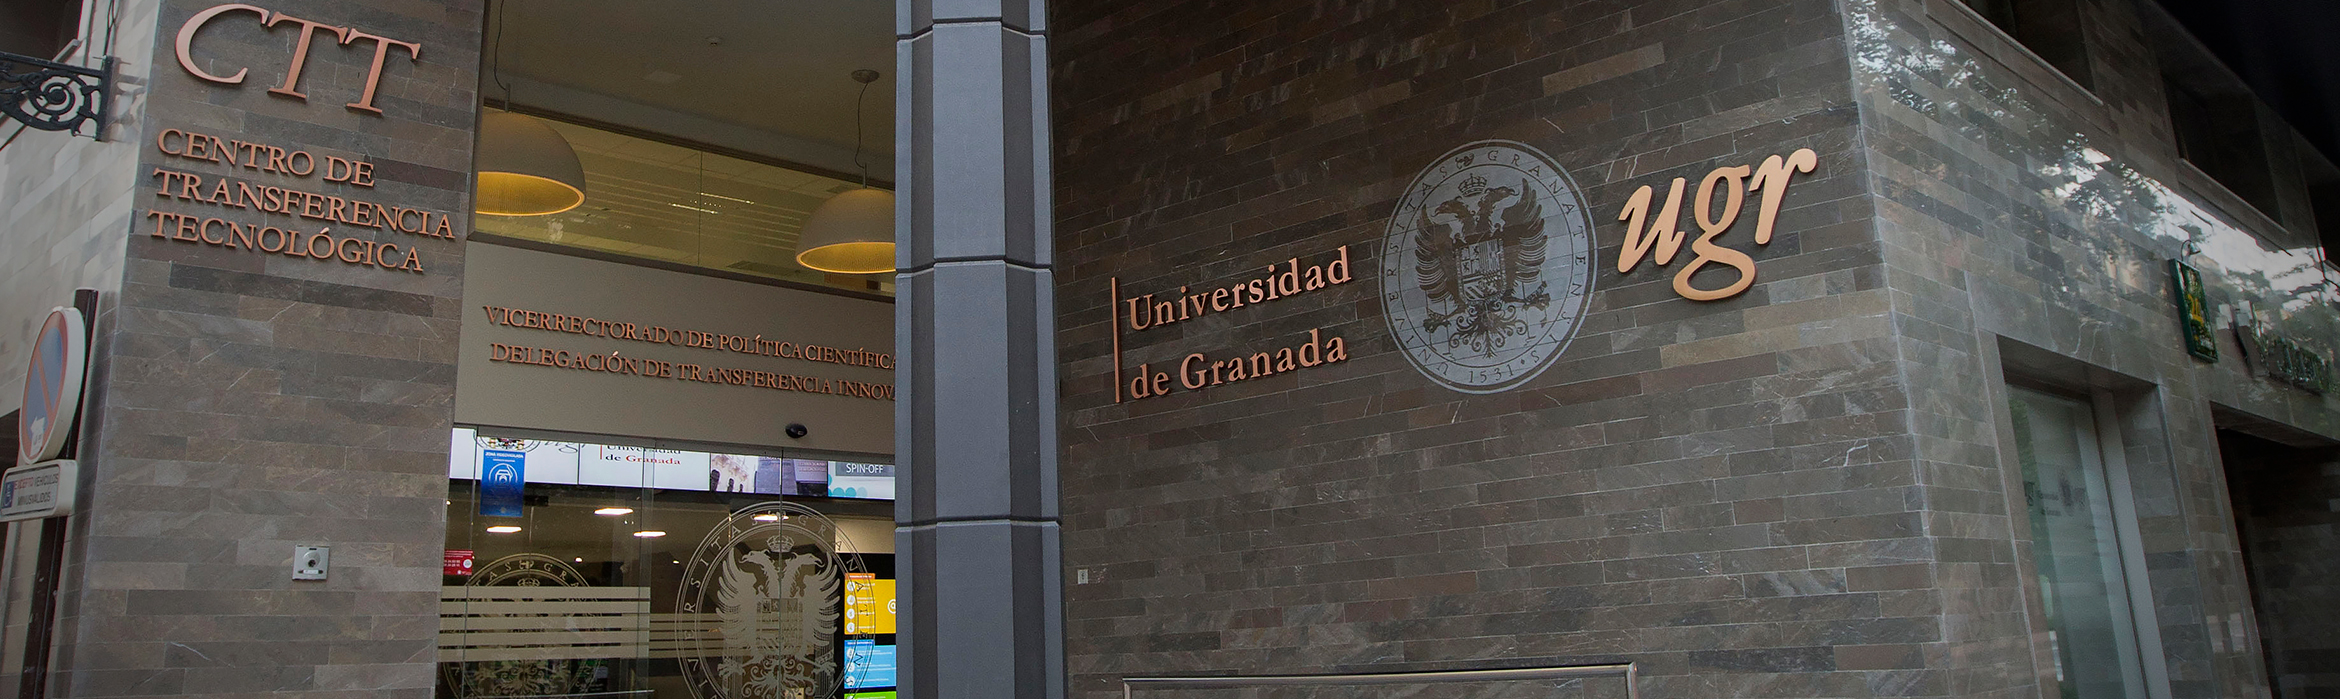 Entrada al Centro de Transferencia Tecnológica de la Universidad de Granada, sede del Vicerrectorado de Investigación y Transferencia ubicado en calle Gran Vía